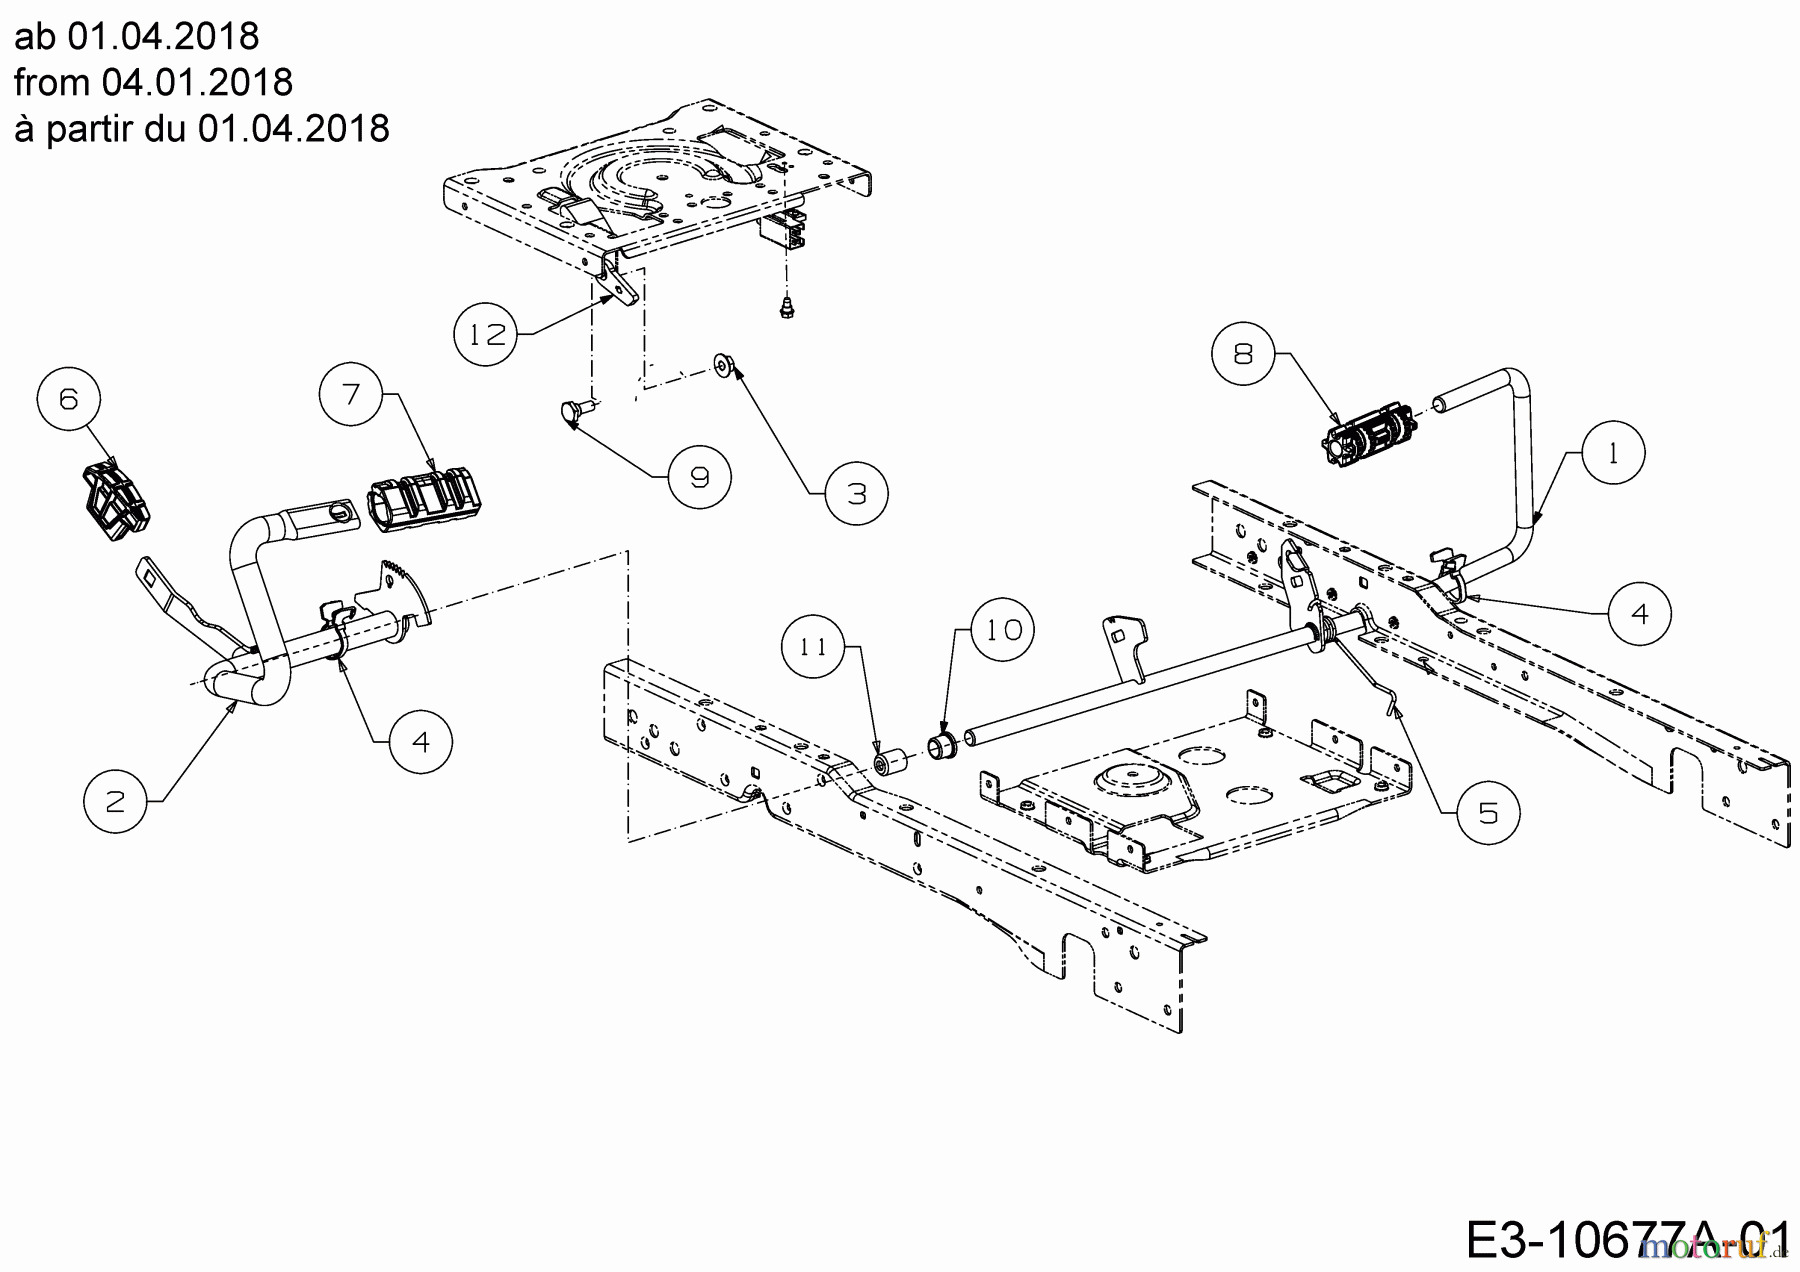  Cub Cadet Lawn tractors XT2 PS107 13AGA1CS603  (2019) Pedals from 04.01.2018